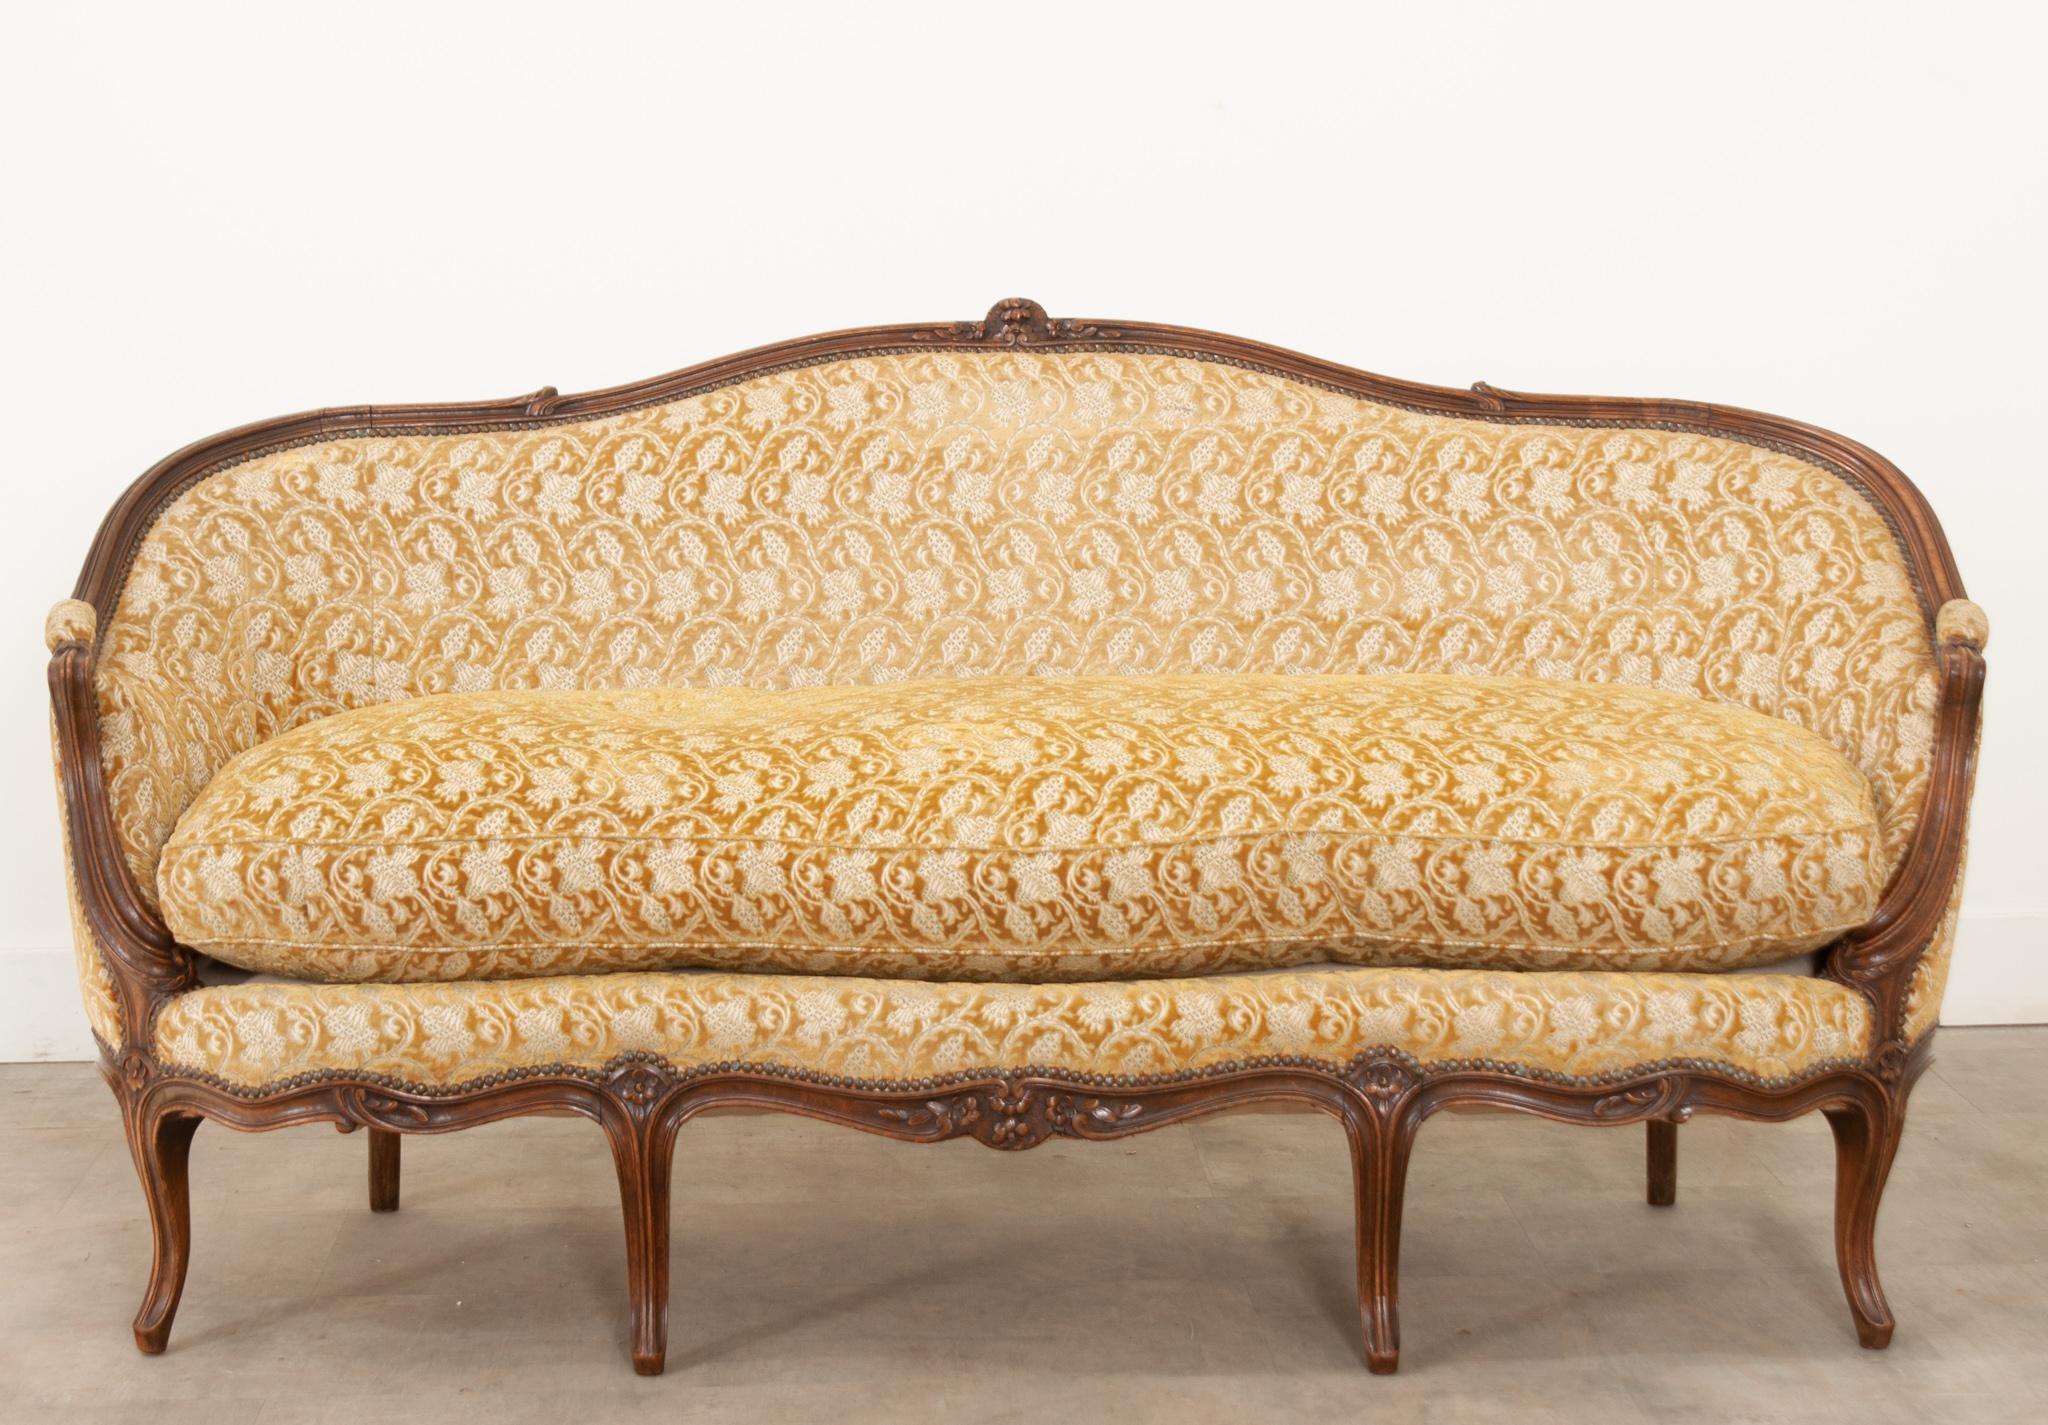 Ce canapé élégant et confortable a été fabriqué en France au XIXe siècle et présente une magnifique tapisserie en velours coupé dans un superbe imprimé botanique et une couleur verge d'or.  Le cadre en noyer sculpté est d'un ton riche et présente